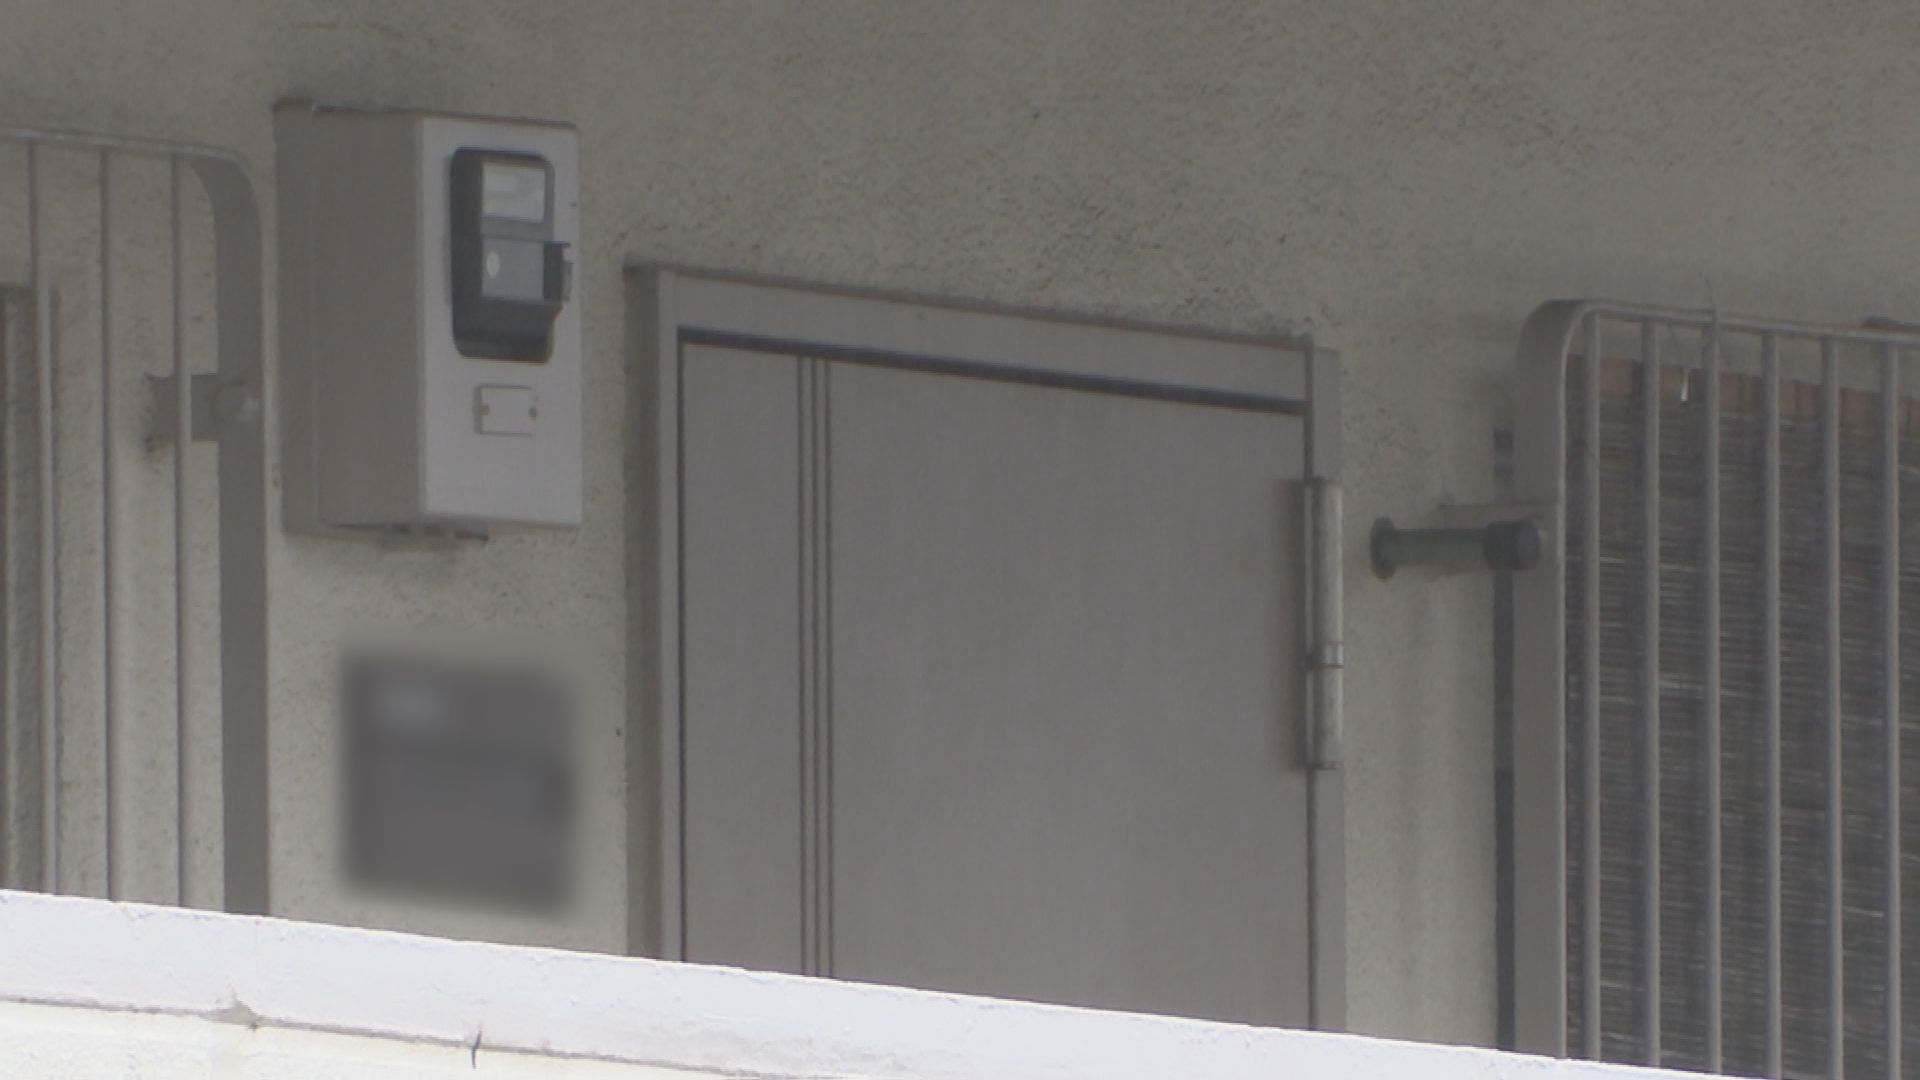 「そのままにしていました」自宅マンションの部屋に弟の遺体を遺棄した疑いで同居の姉を逮捕　死後3か月は経過か　神奈川県警